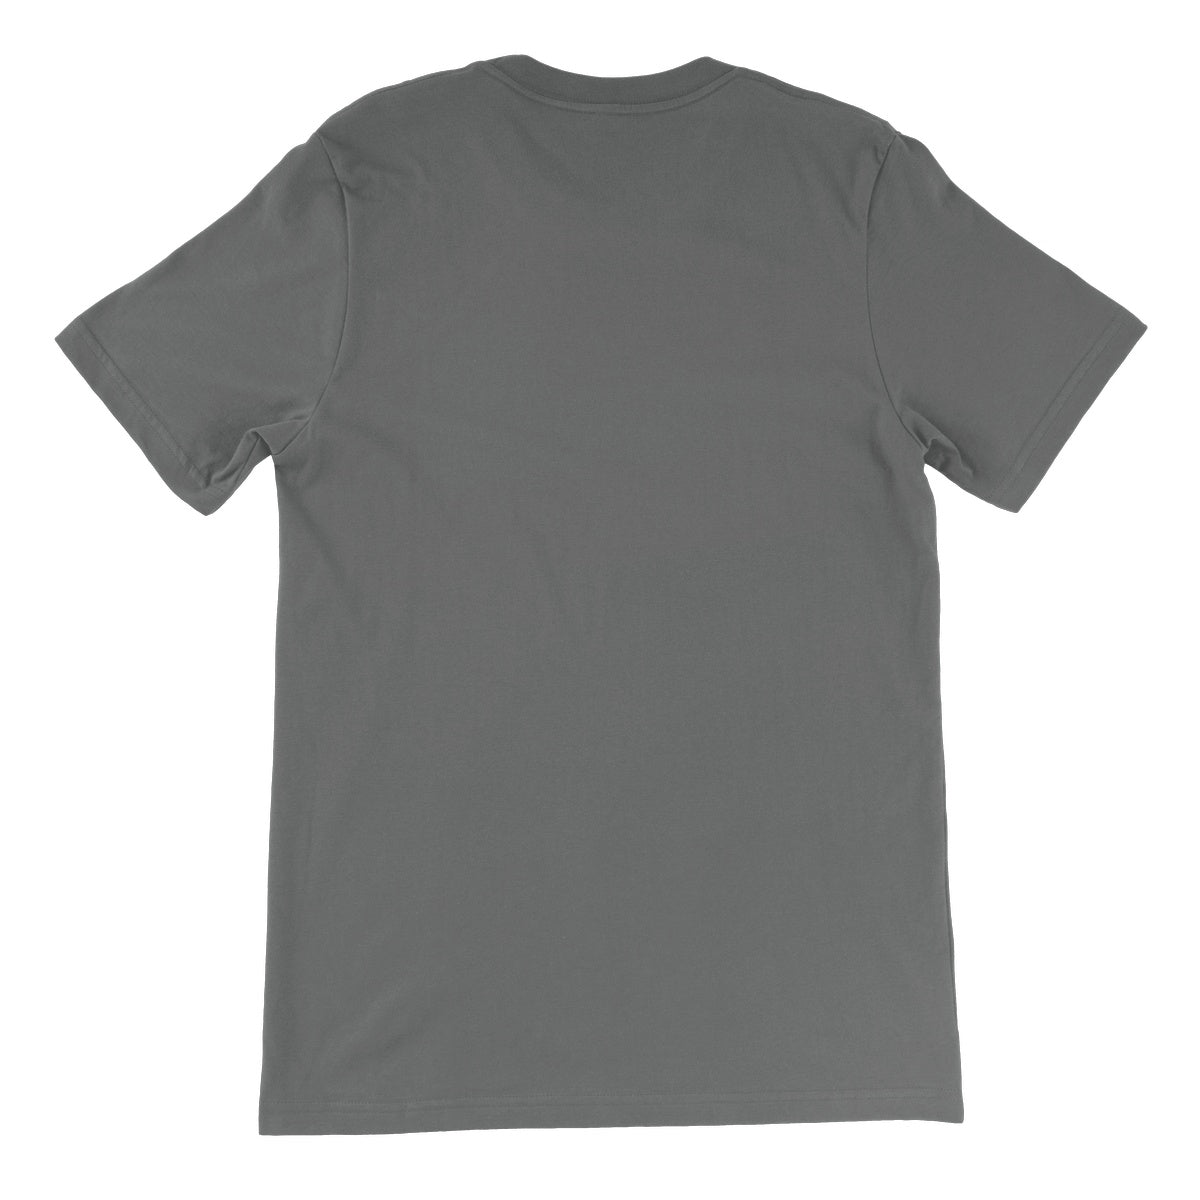 Flying Home Unisex Short Sleeve T-Shirt